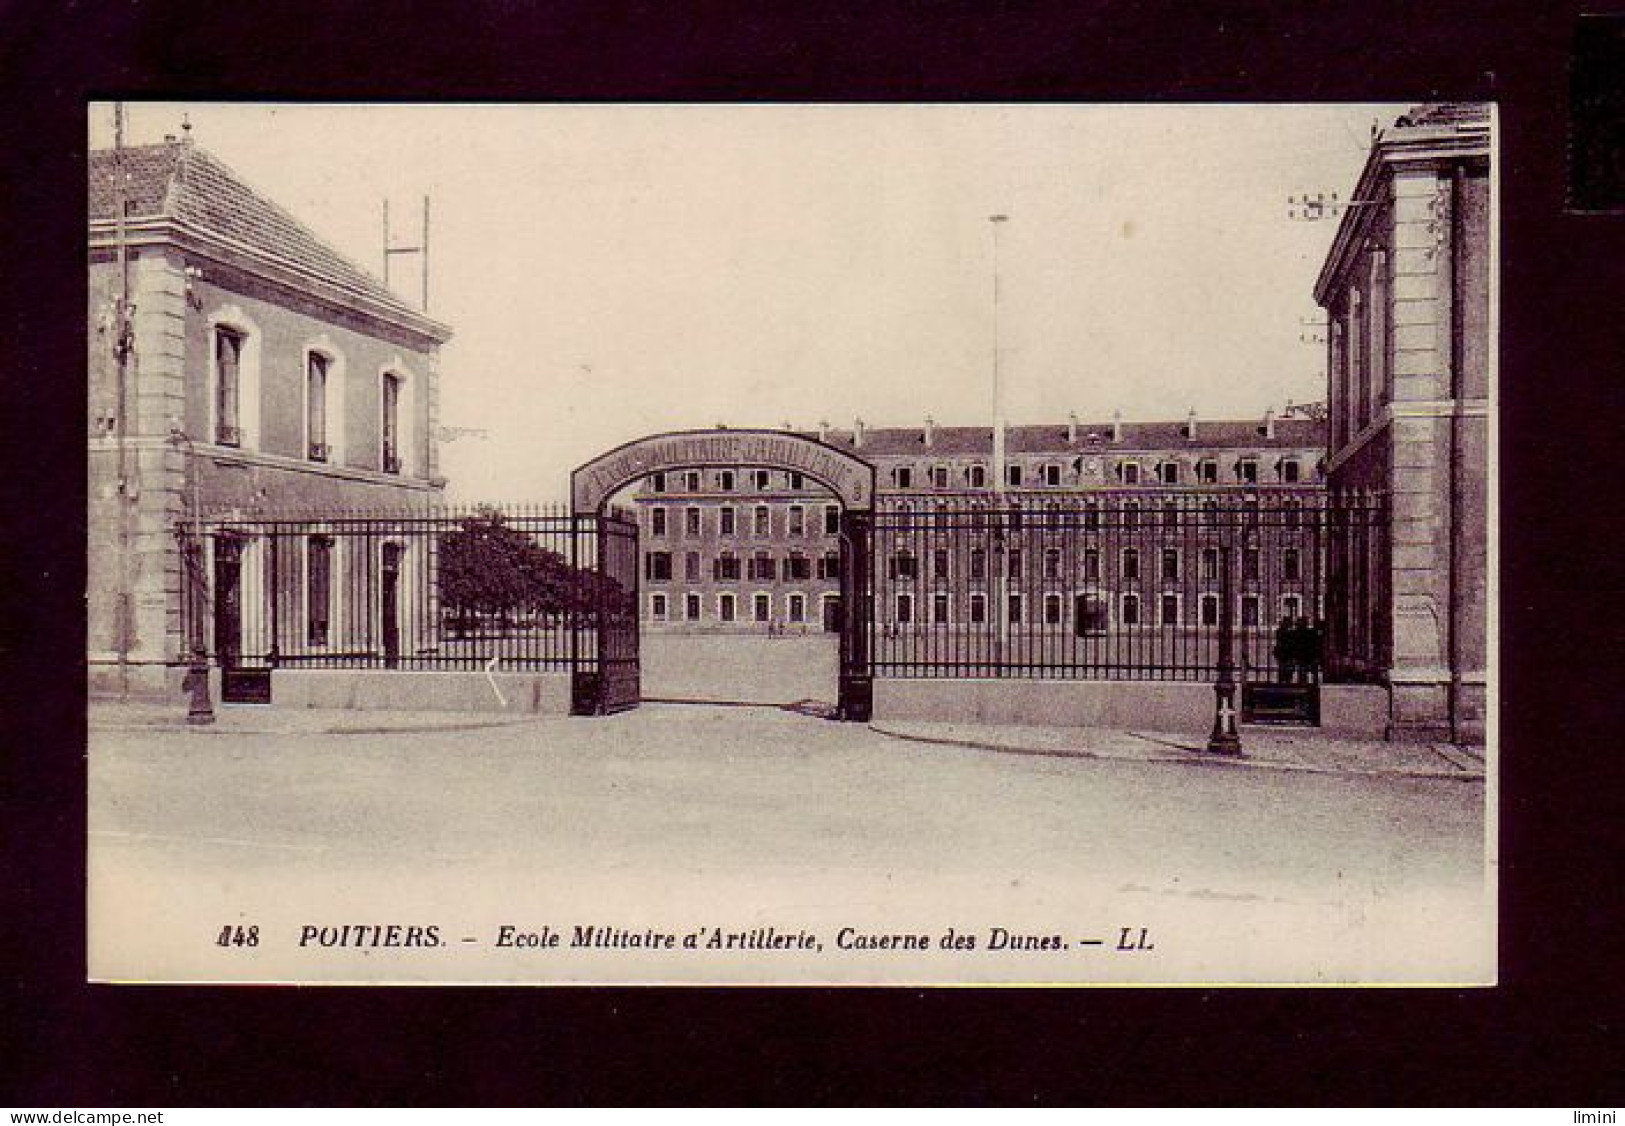 86 - POITIERS - ECOLE MILITAIRE D'ARTILLERIE, CASERNE DES DUNES -  - Poitiers